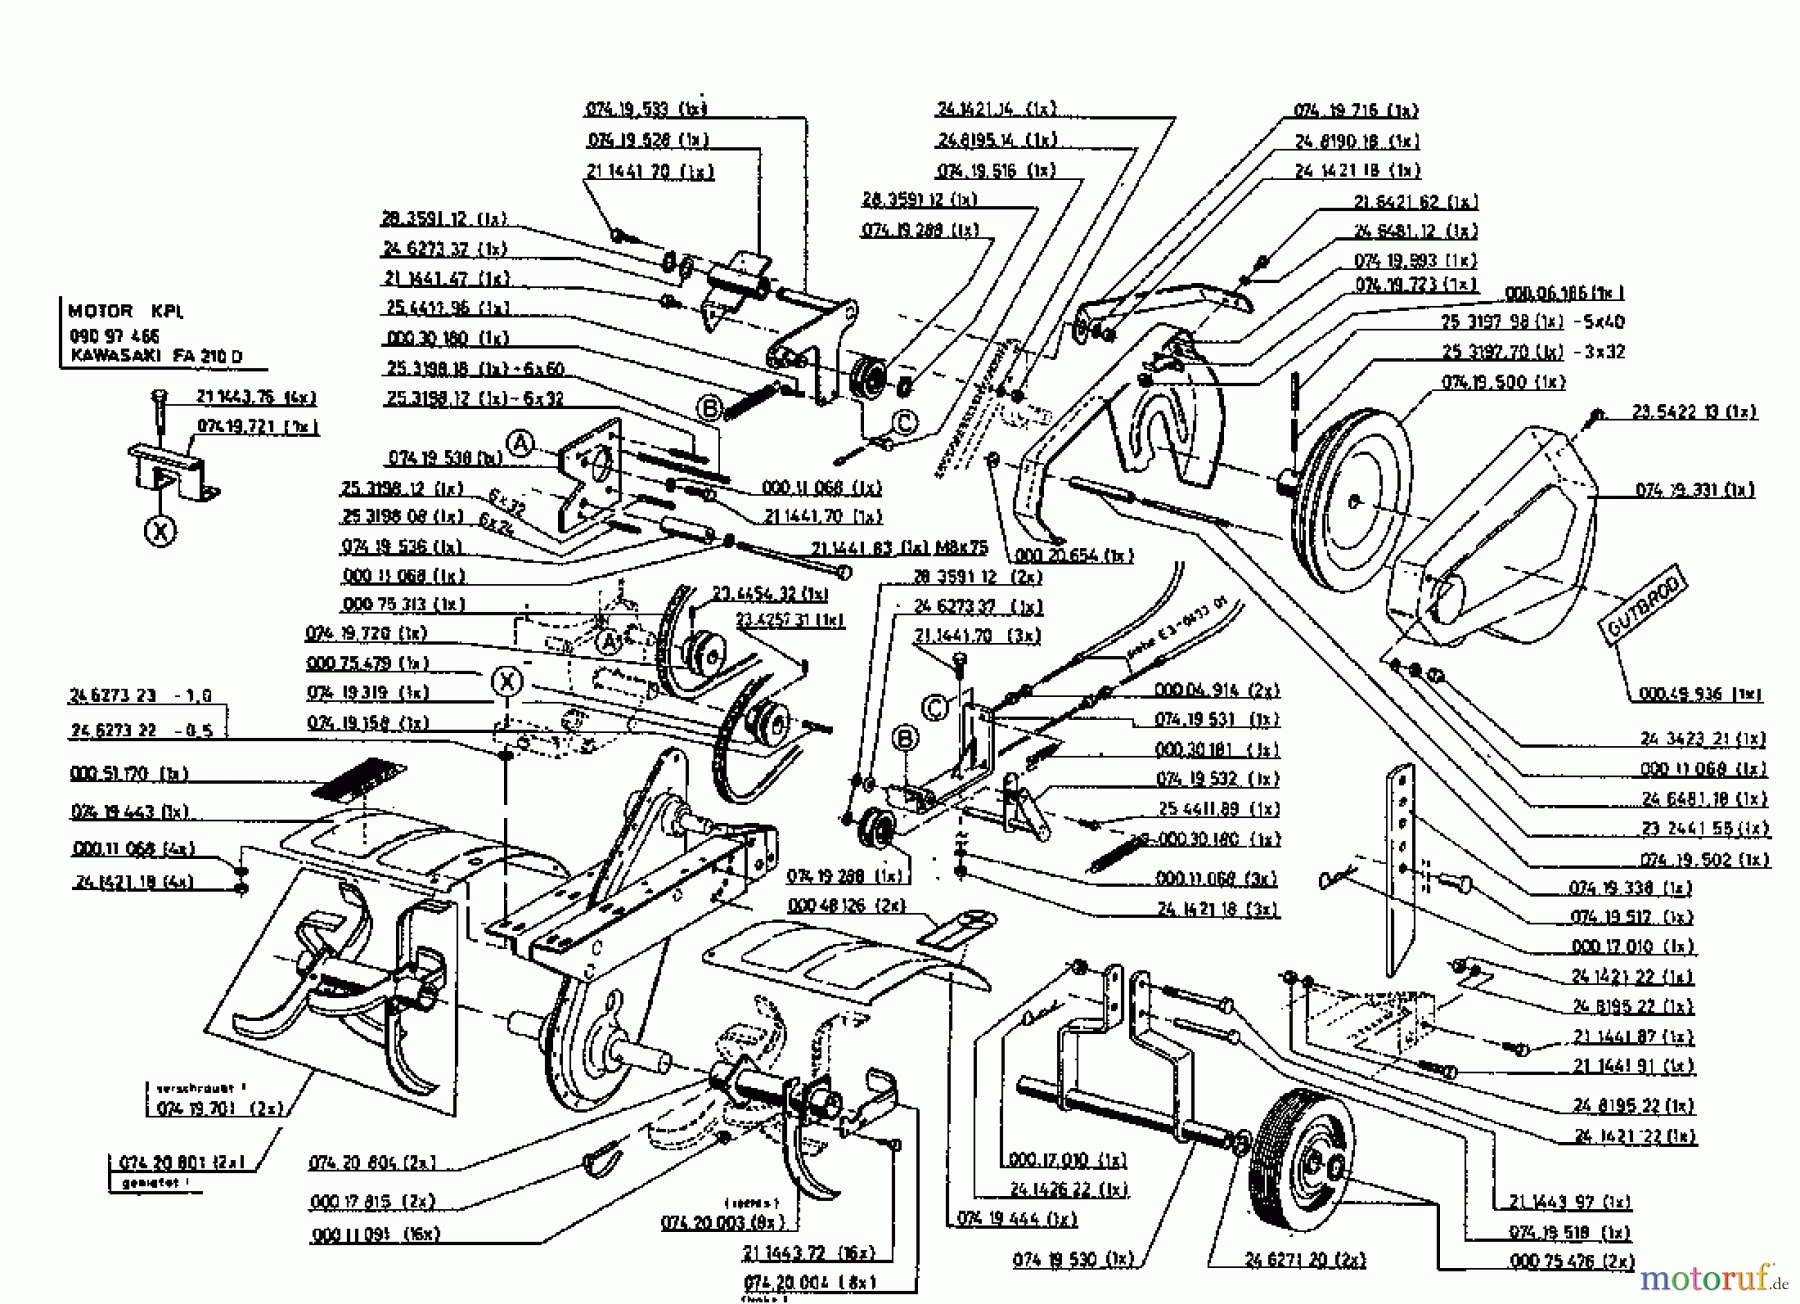  Gutbrod Tillers MB 62-52 K 07518.03  (1996) Basic machine